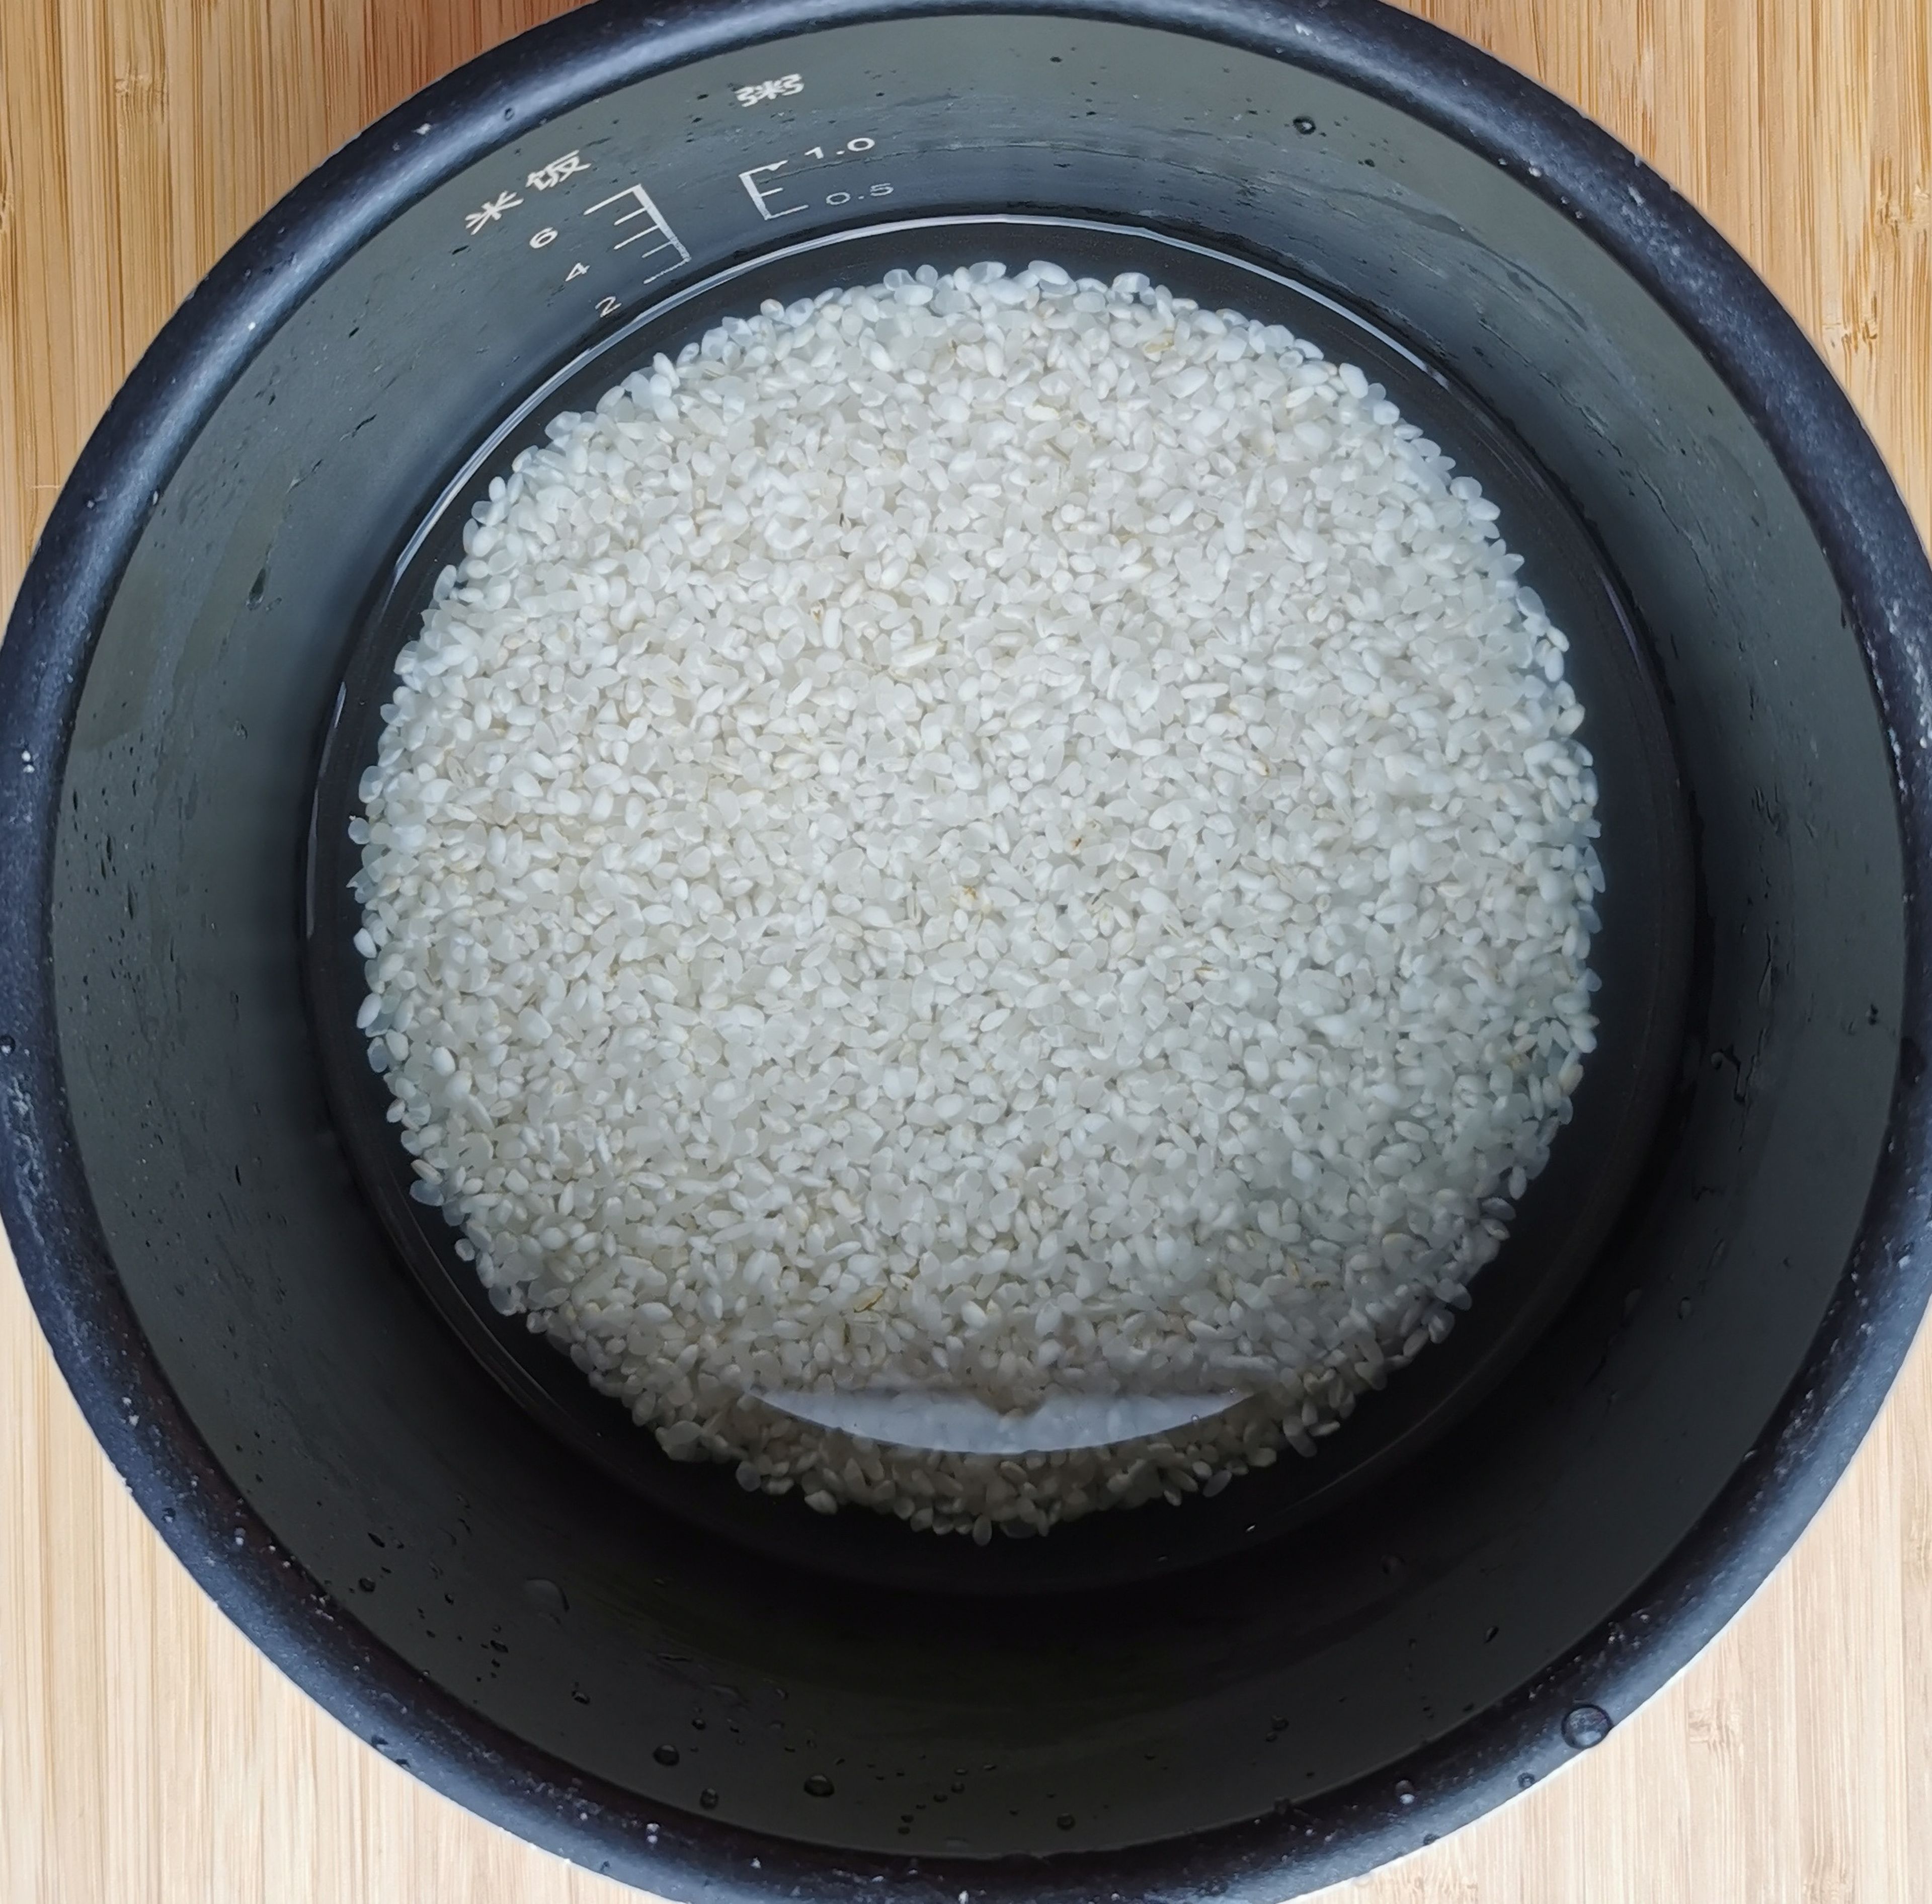 Den Reis waschen und in einen Reiskocher geben, Salami und Kartoffel hinzufügen, je nach Reissorte richtige Menge Wasser dazu und den Reiskocher einschalten.